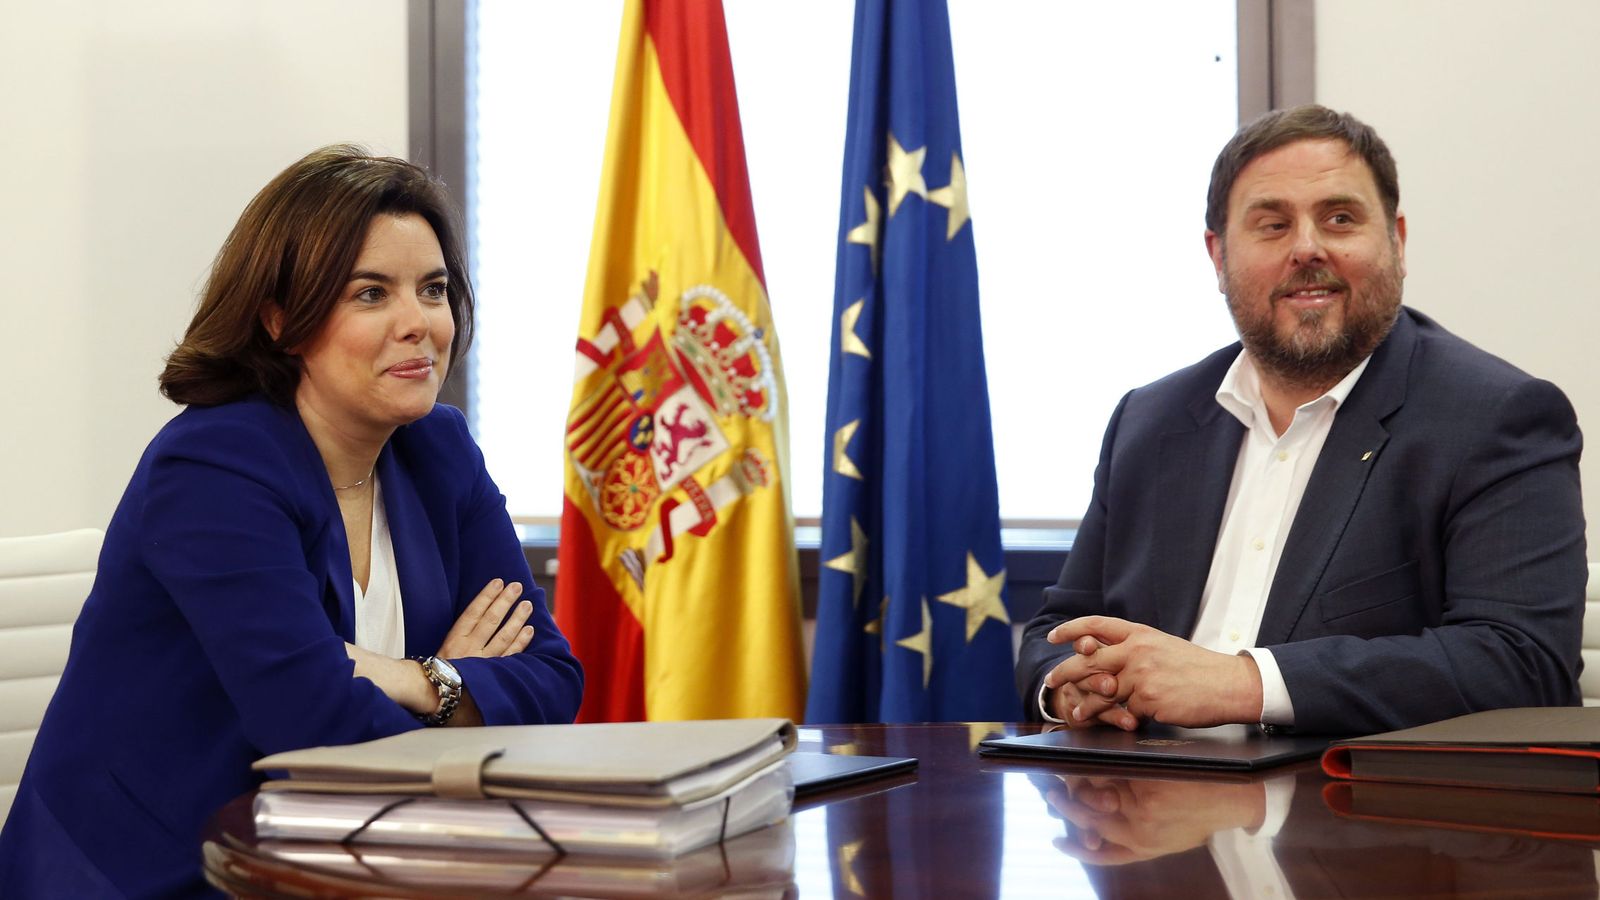 Foto: La vicepresidenta del Gobierno, Soraya Sáenz de Santamaría, junto al dirigente catalán Oriol Junqueras. (EFE)